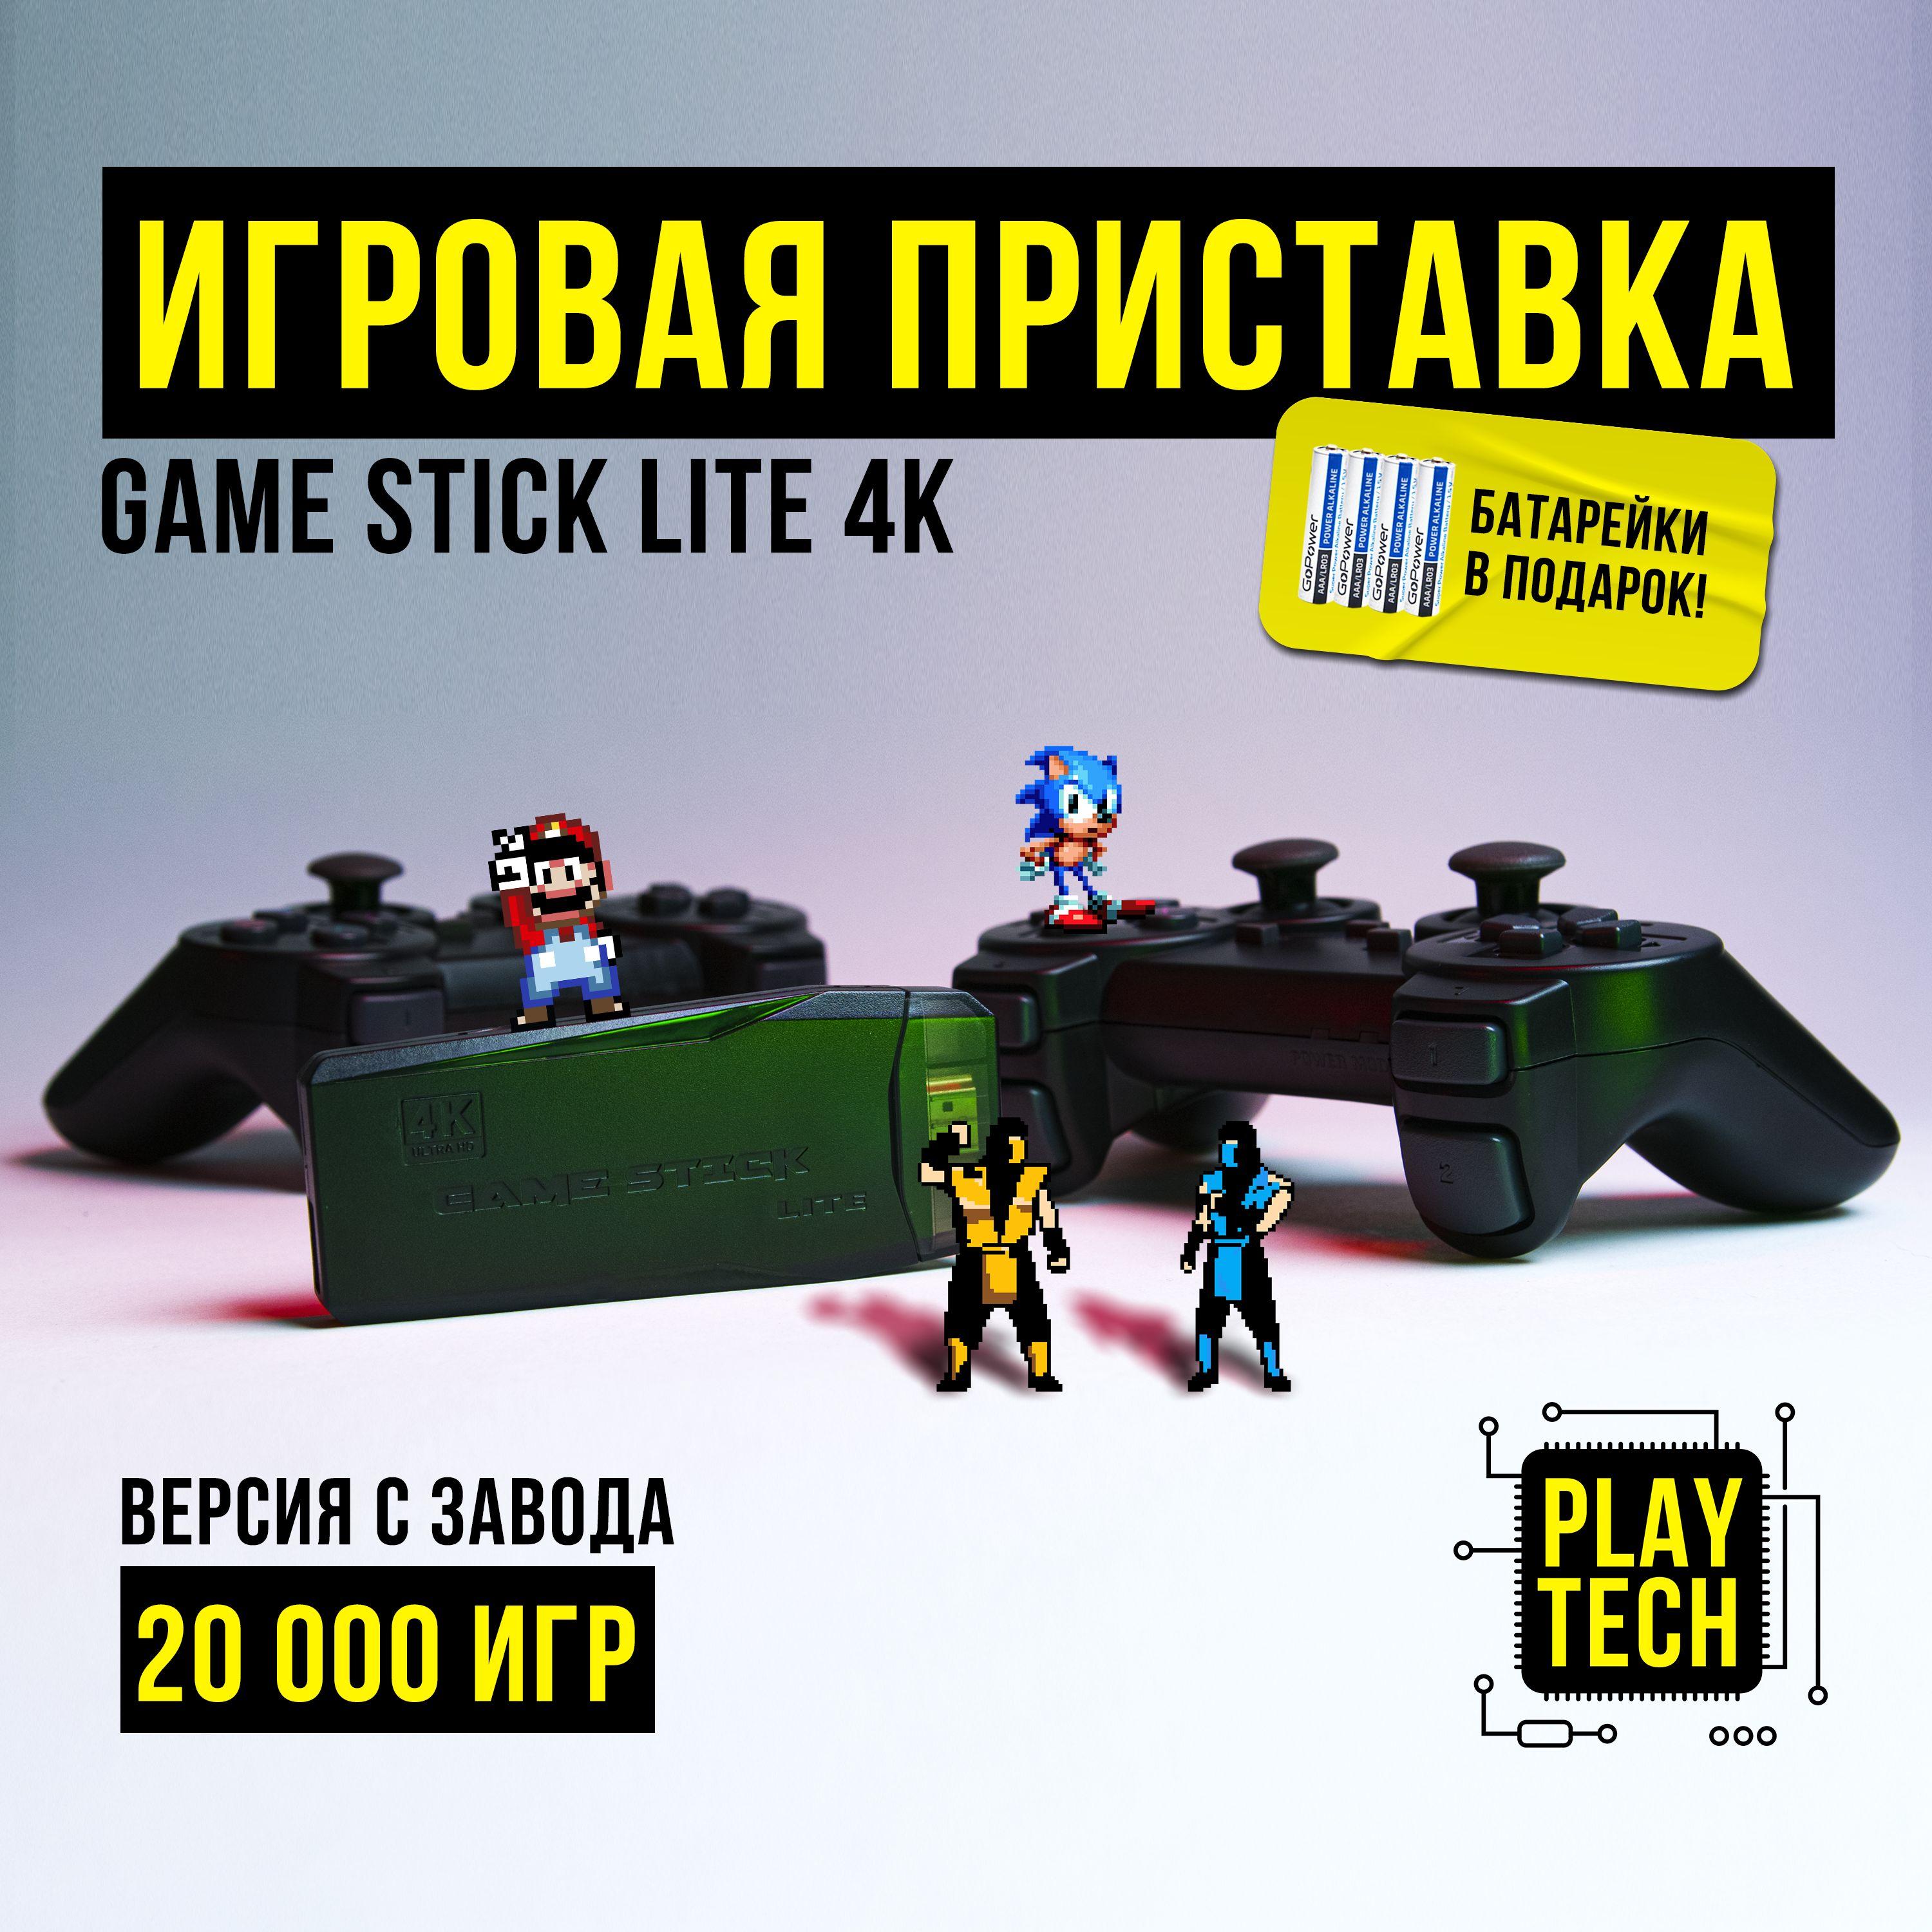 Game Stick Lite | 20 000+ ИГР, Игровая ретро приставка GAME STICK LITE 4K